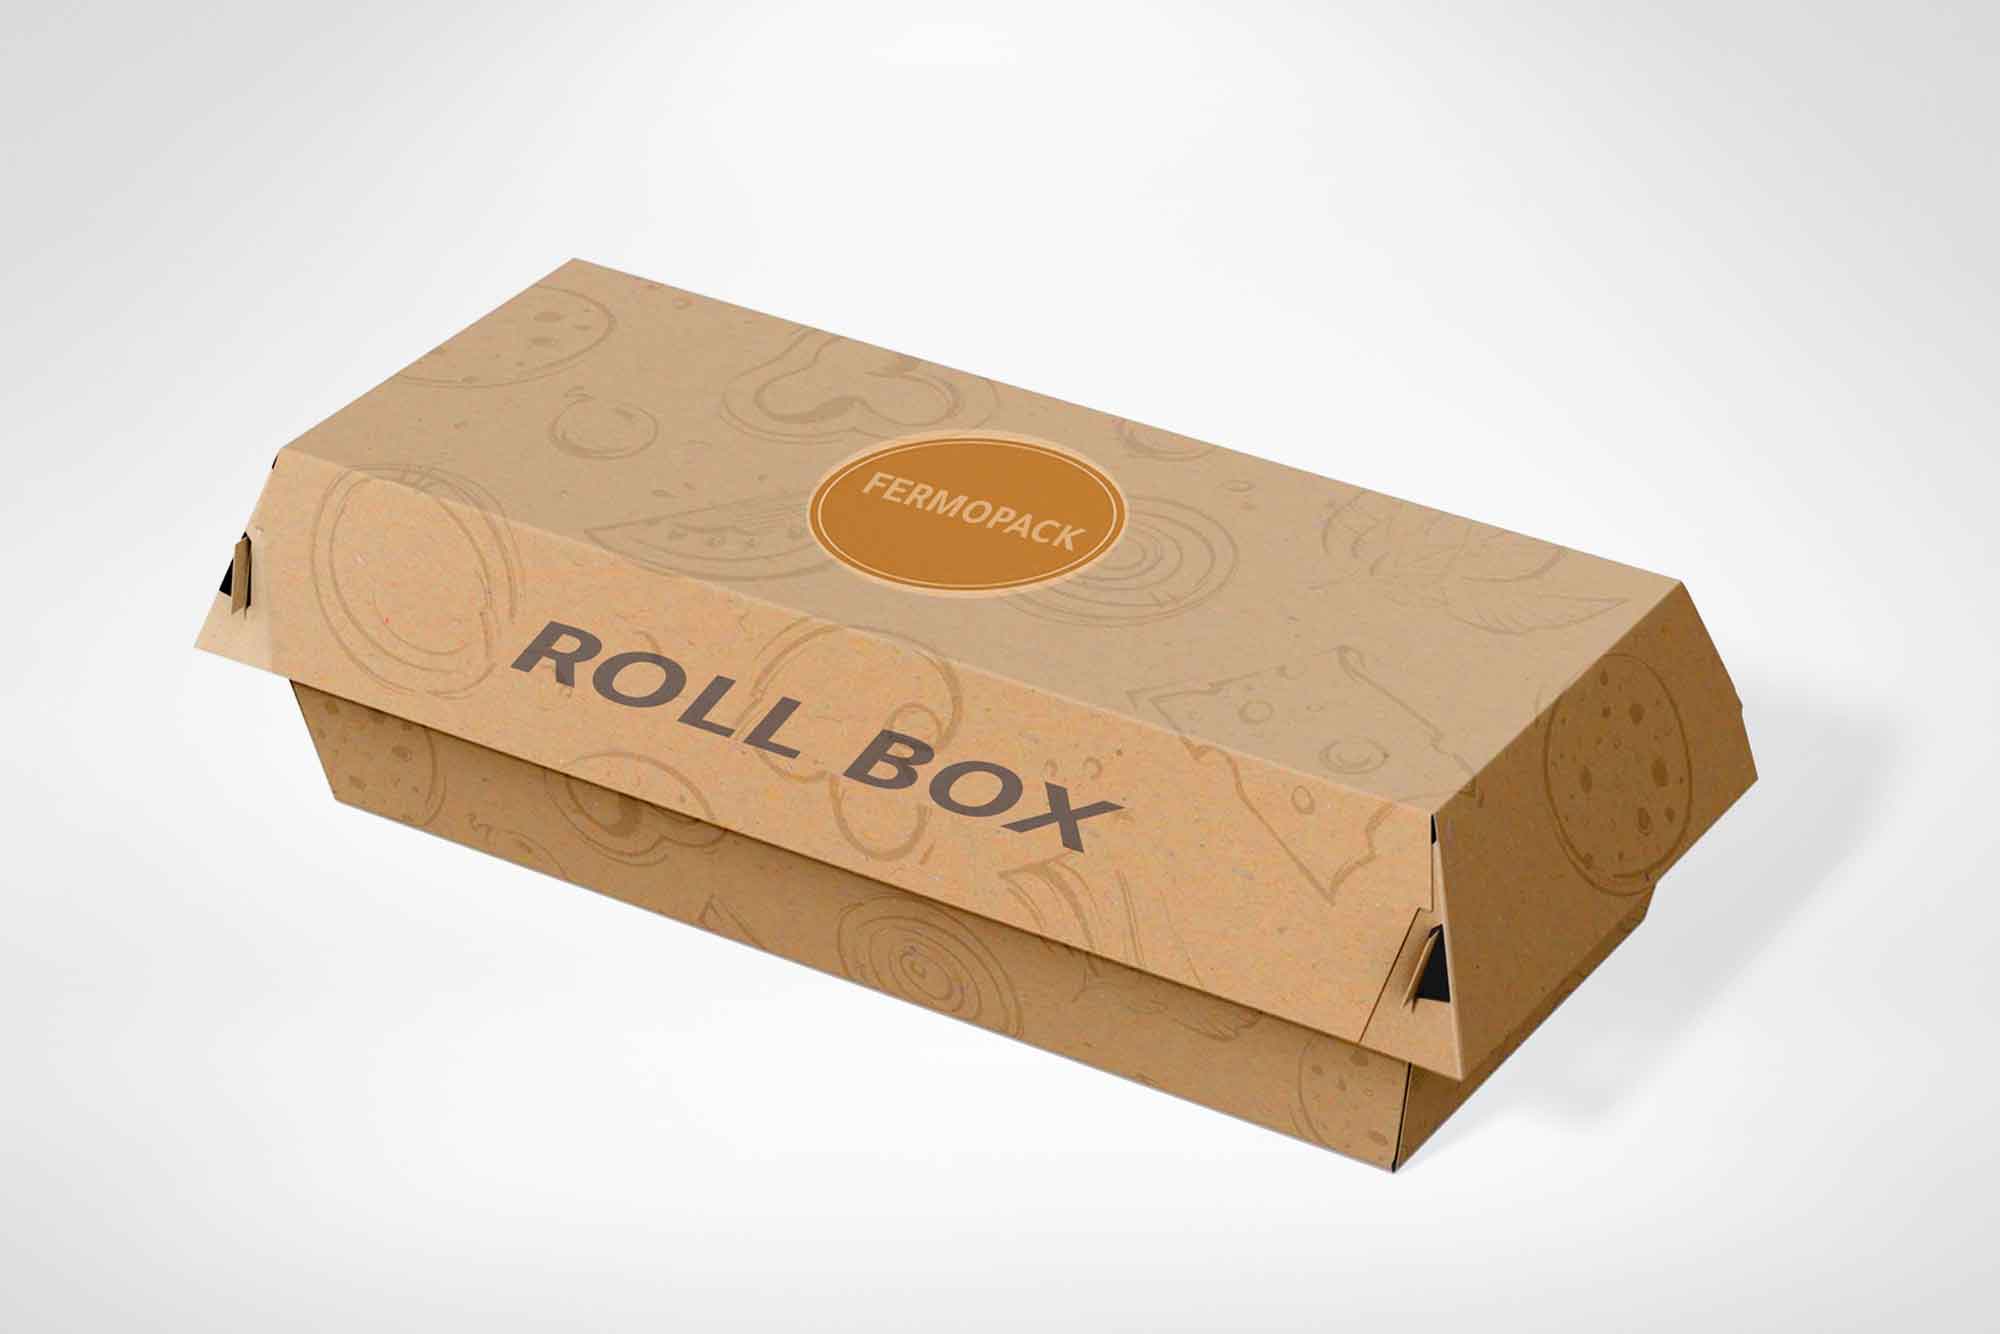 Roll box